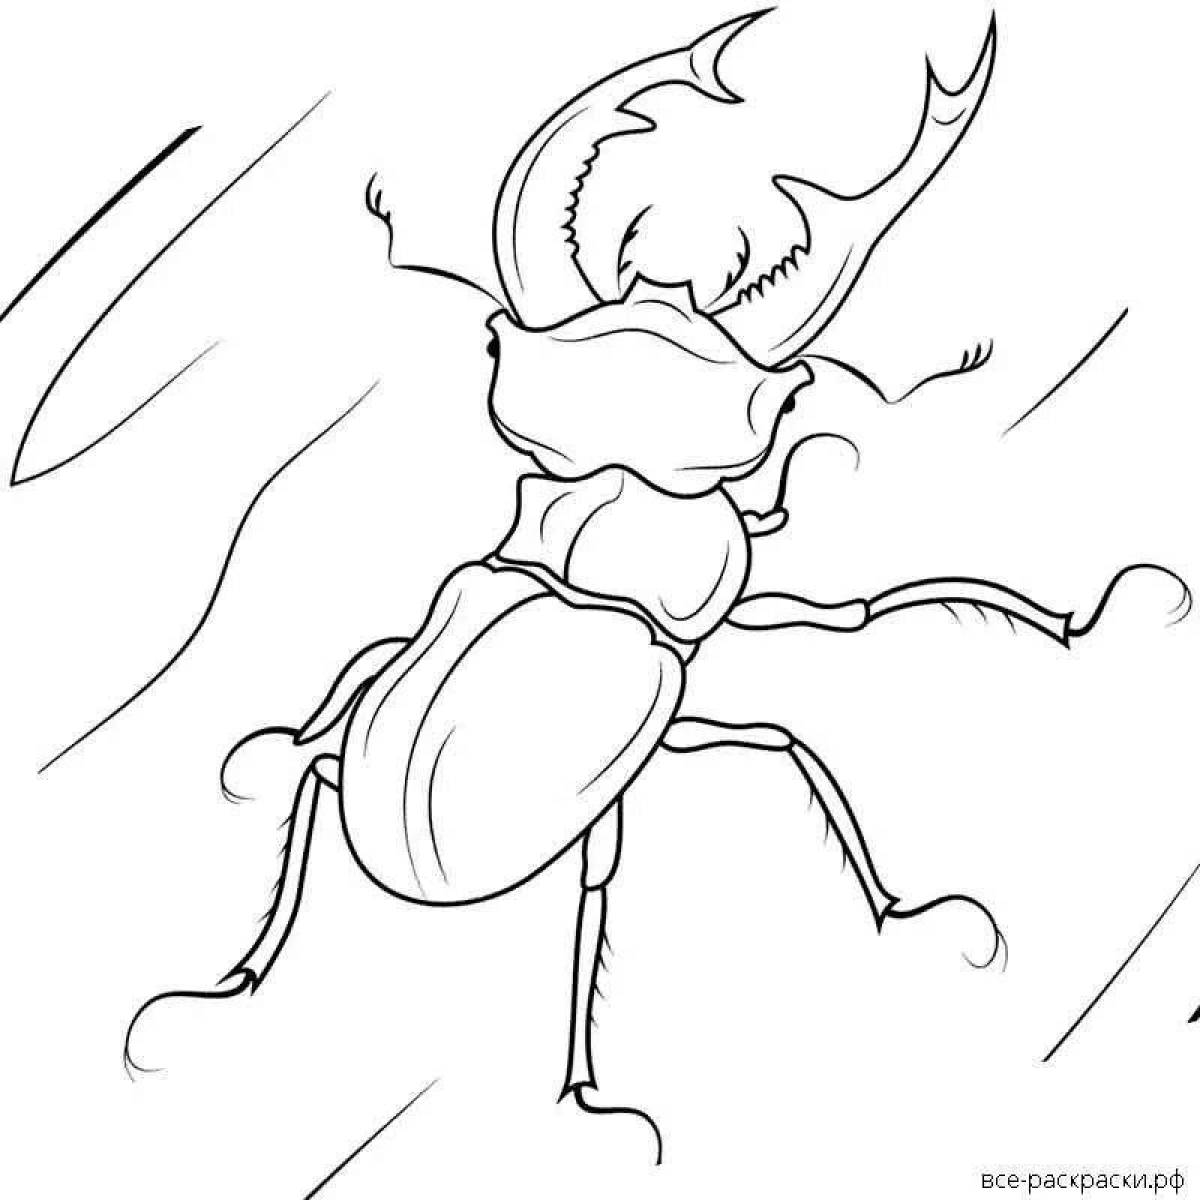 Elegant stag beetle coloring book